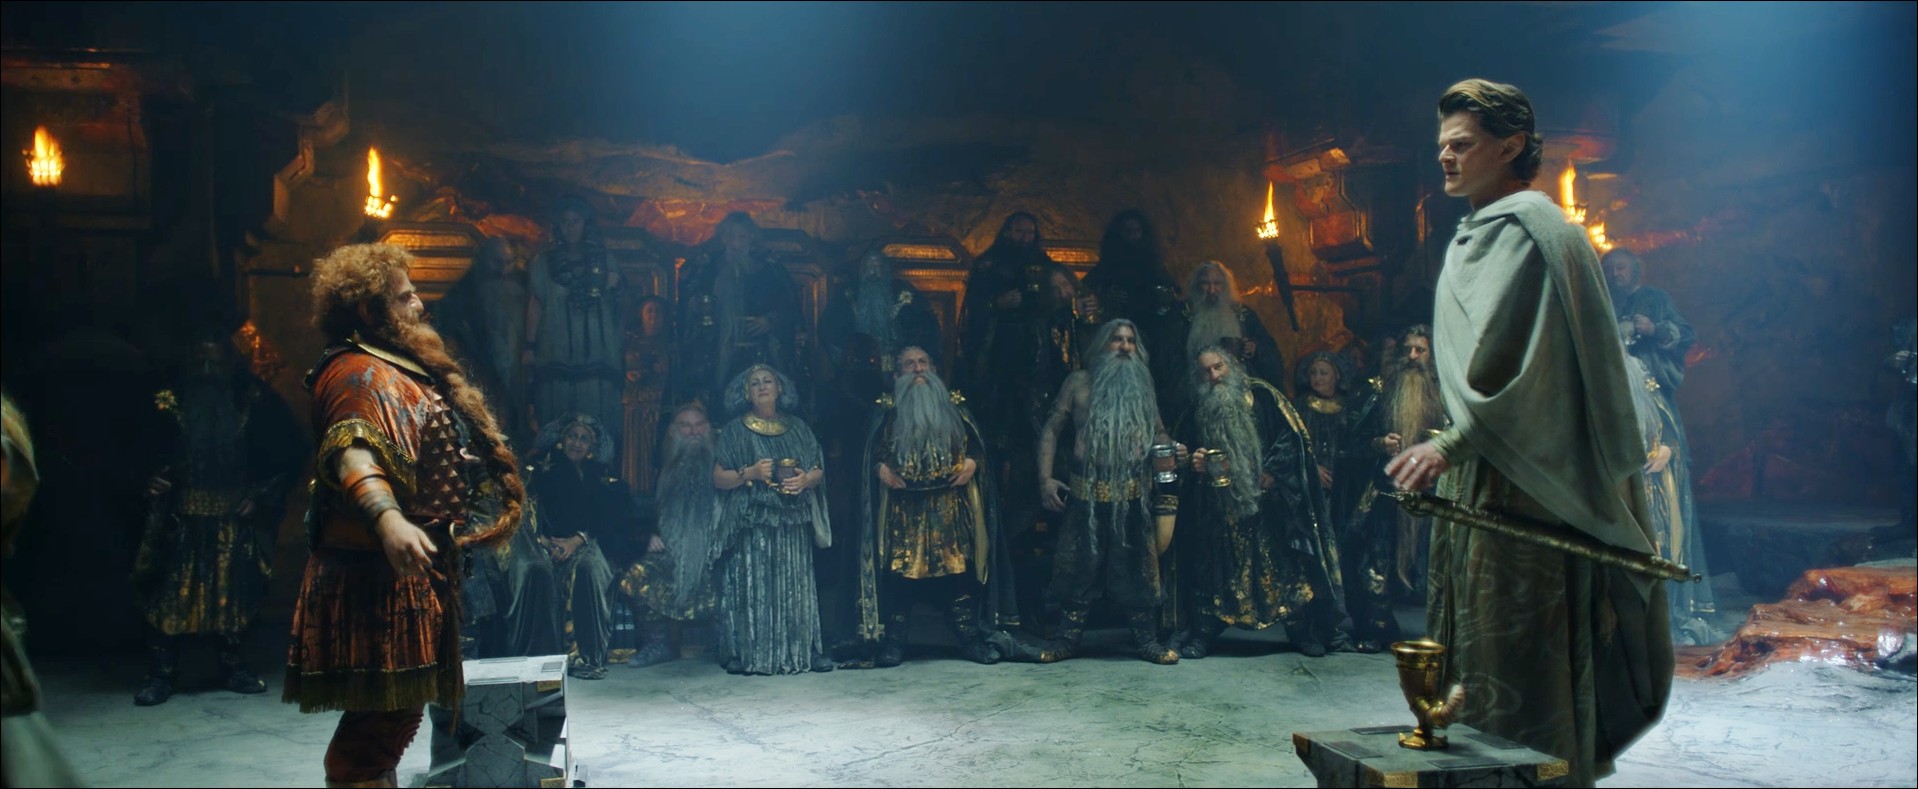 Durin Elrond Le Seigneur des Anneaux : Les Anneaux de Pouvoir